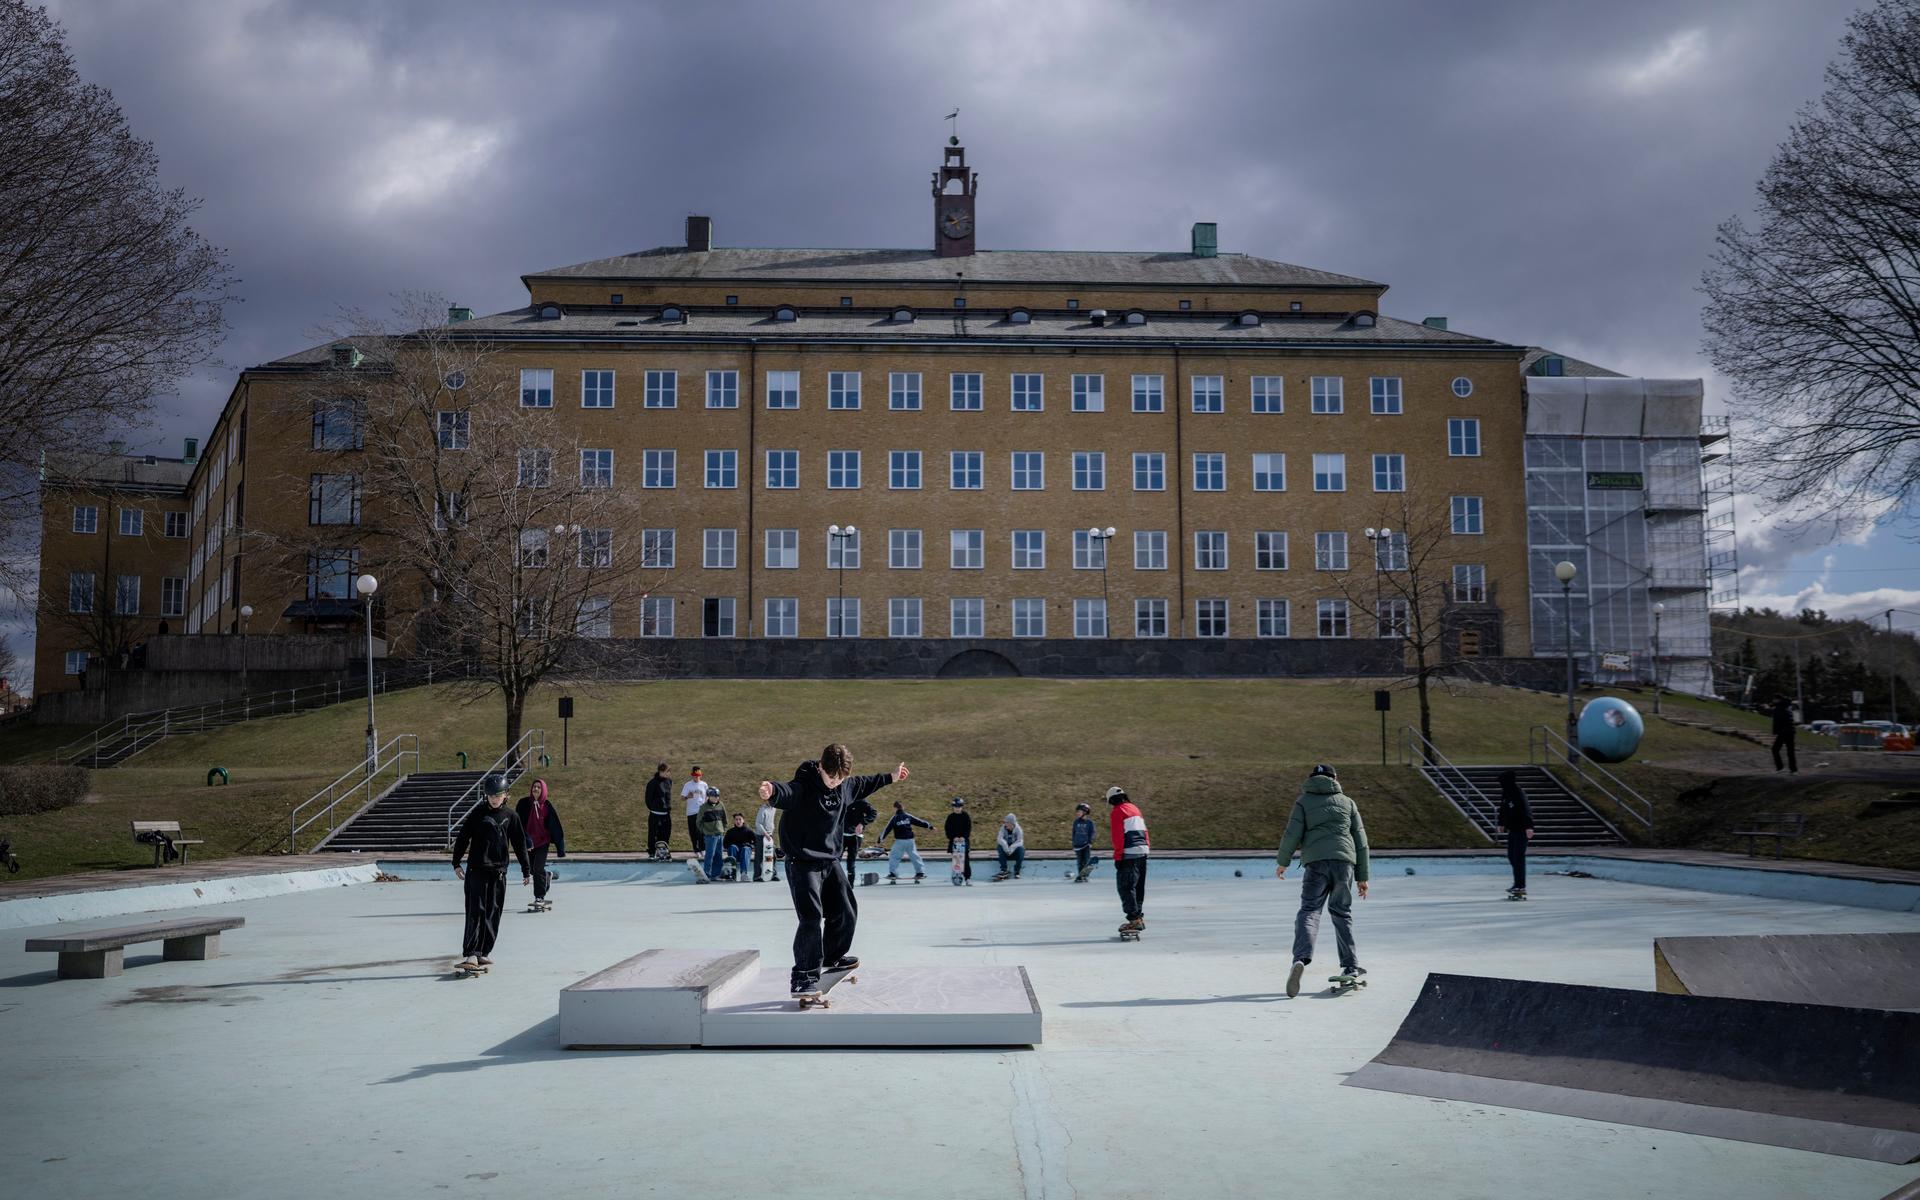 Plaskis är en av Göteborgs mest populära platser för skateboardåkare.